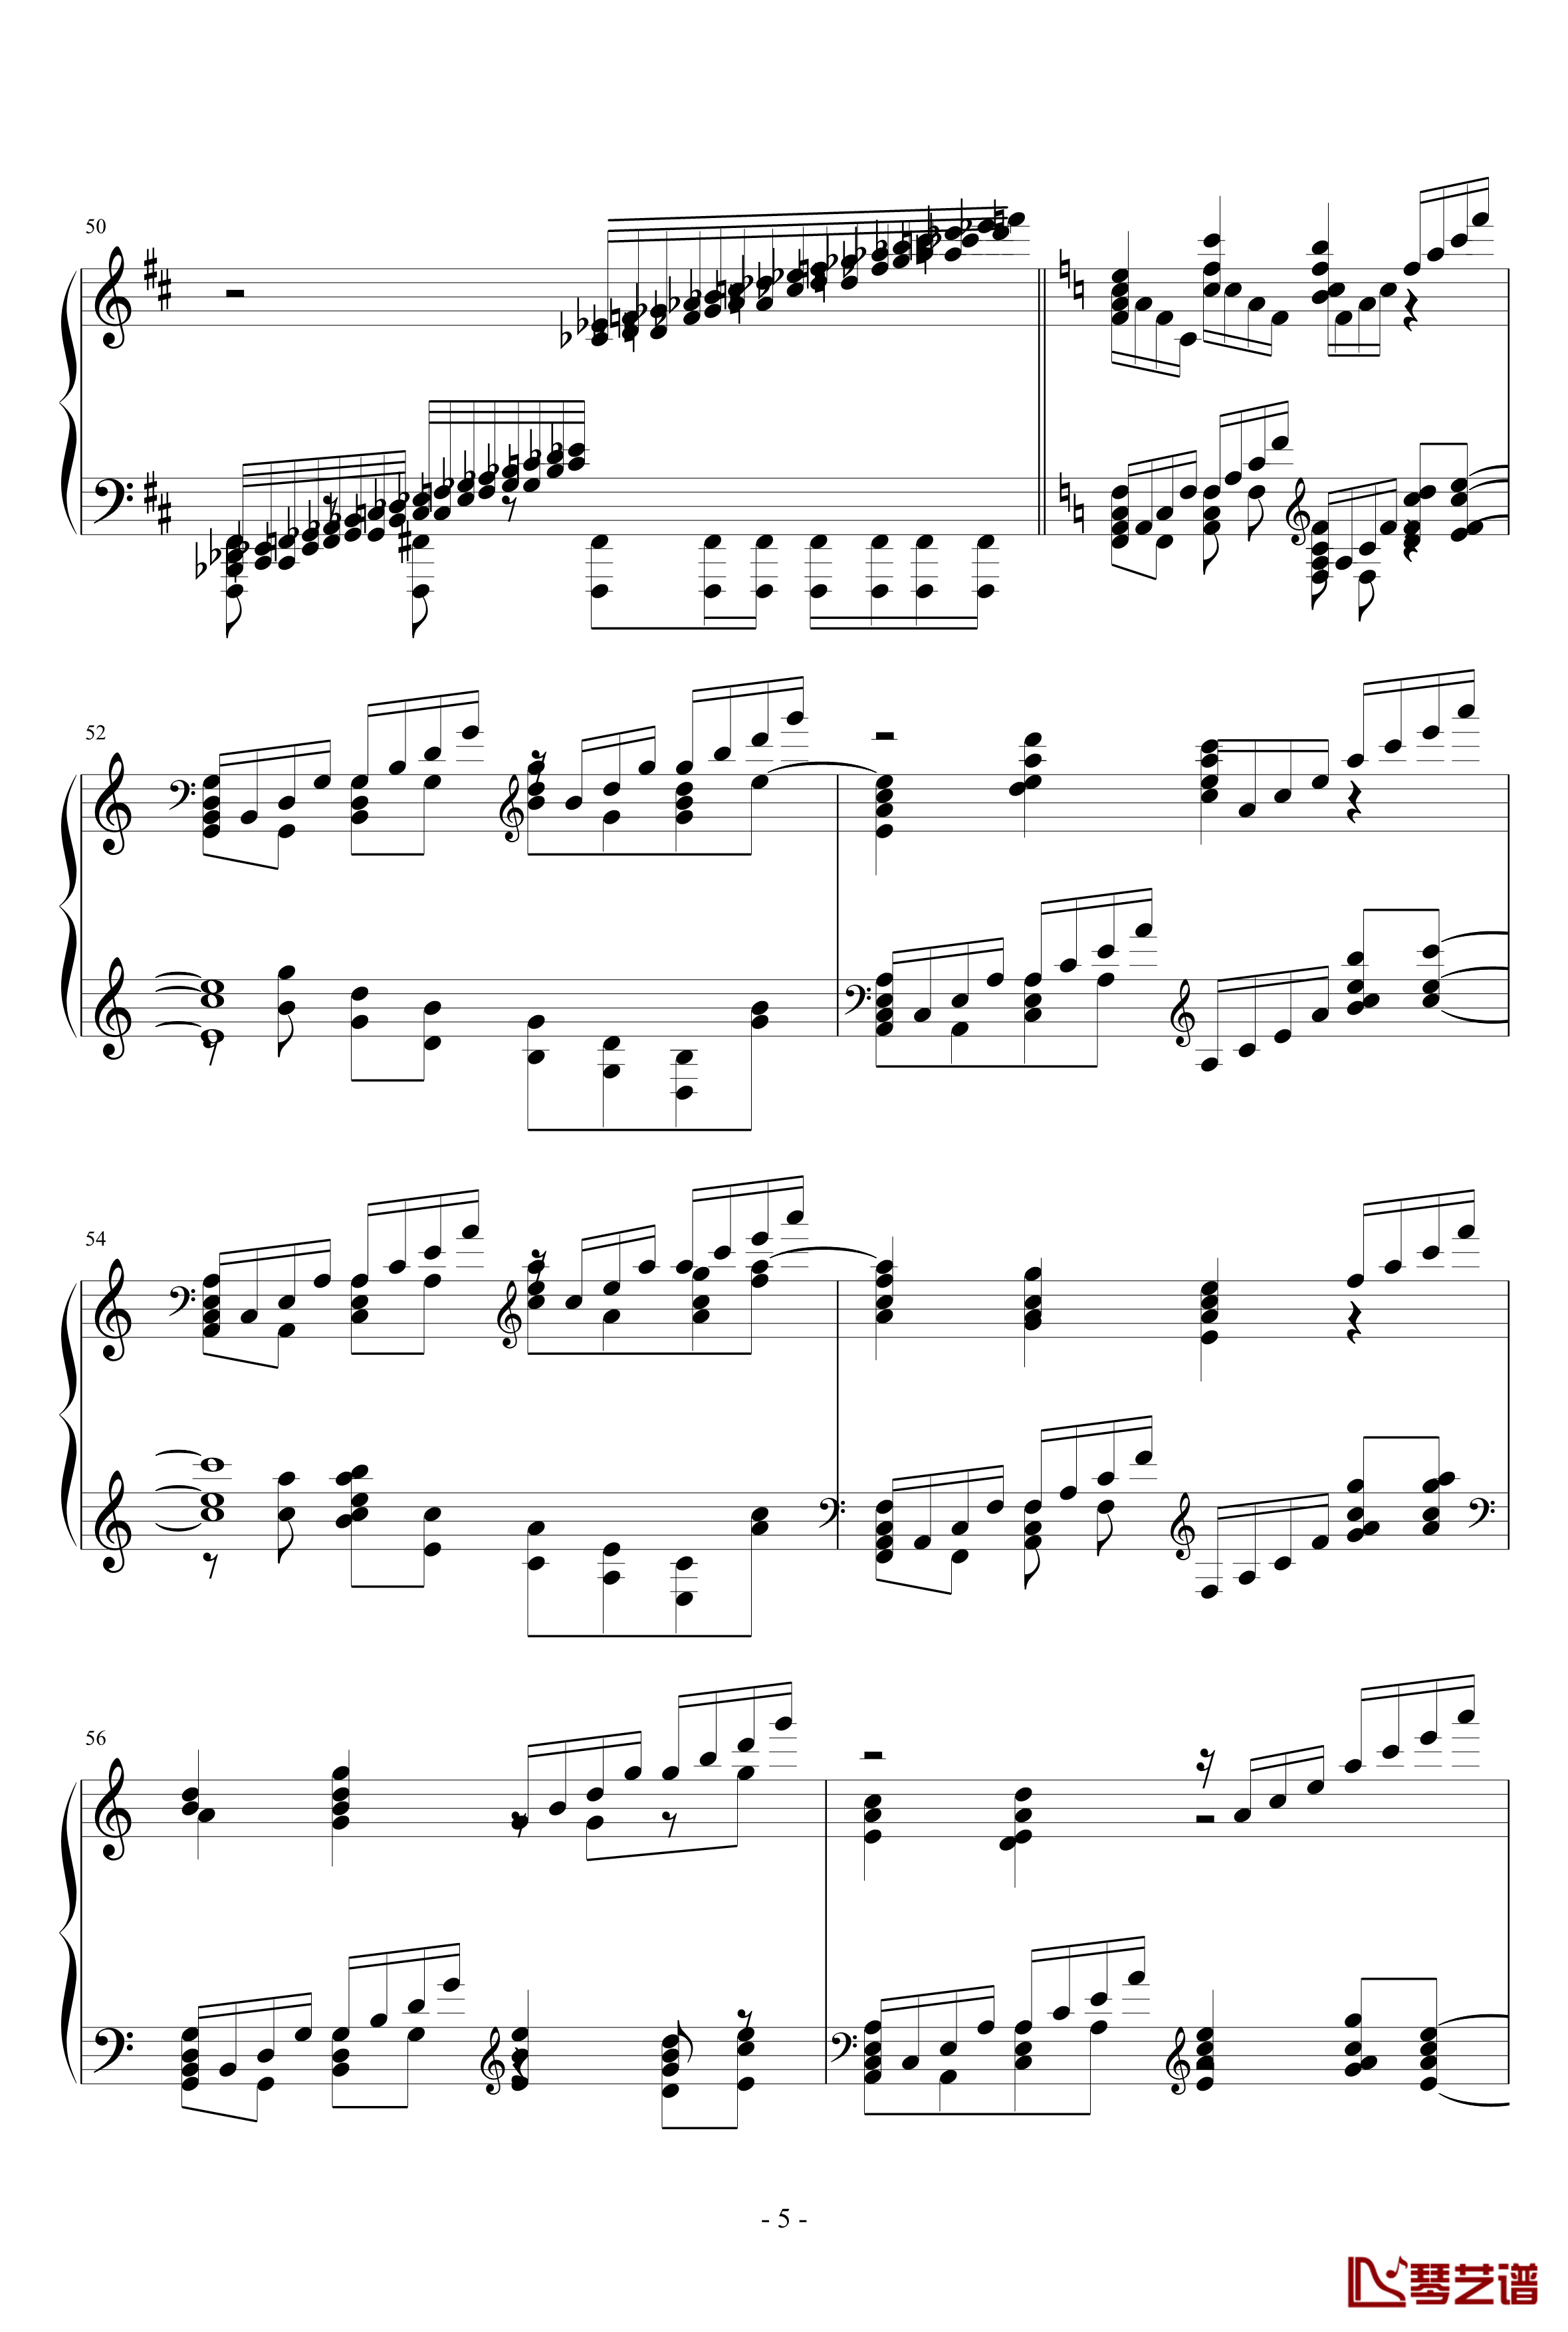 ネクロファンタジア钢琴谱-HARD-八云紫-东方project5